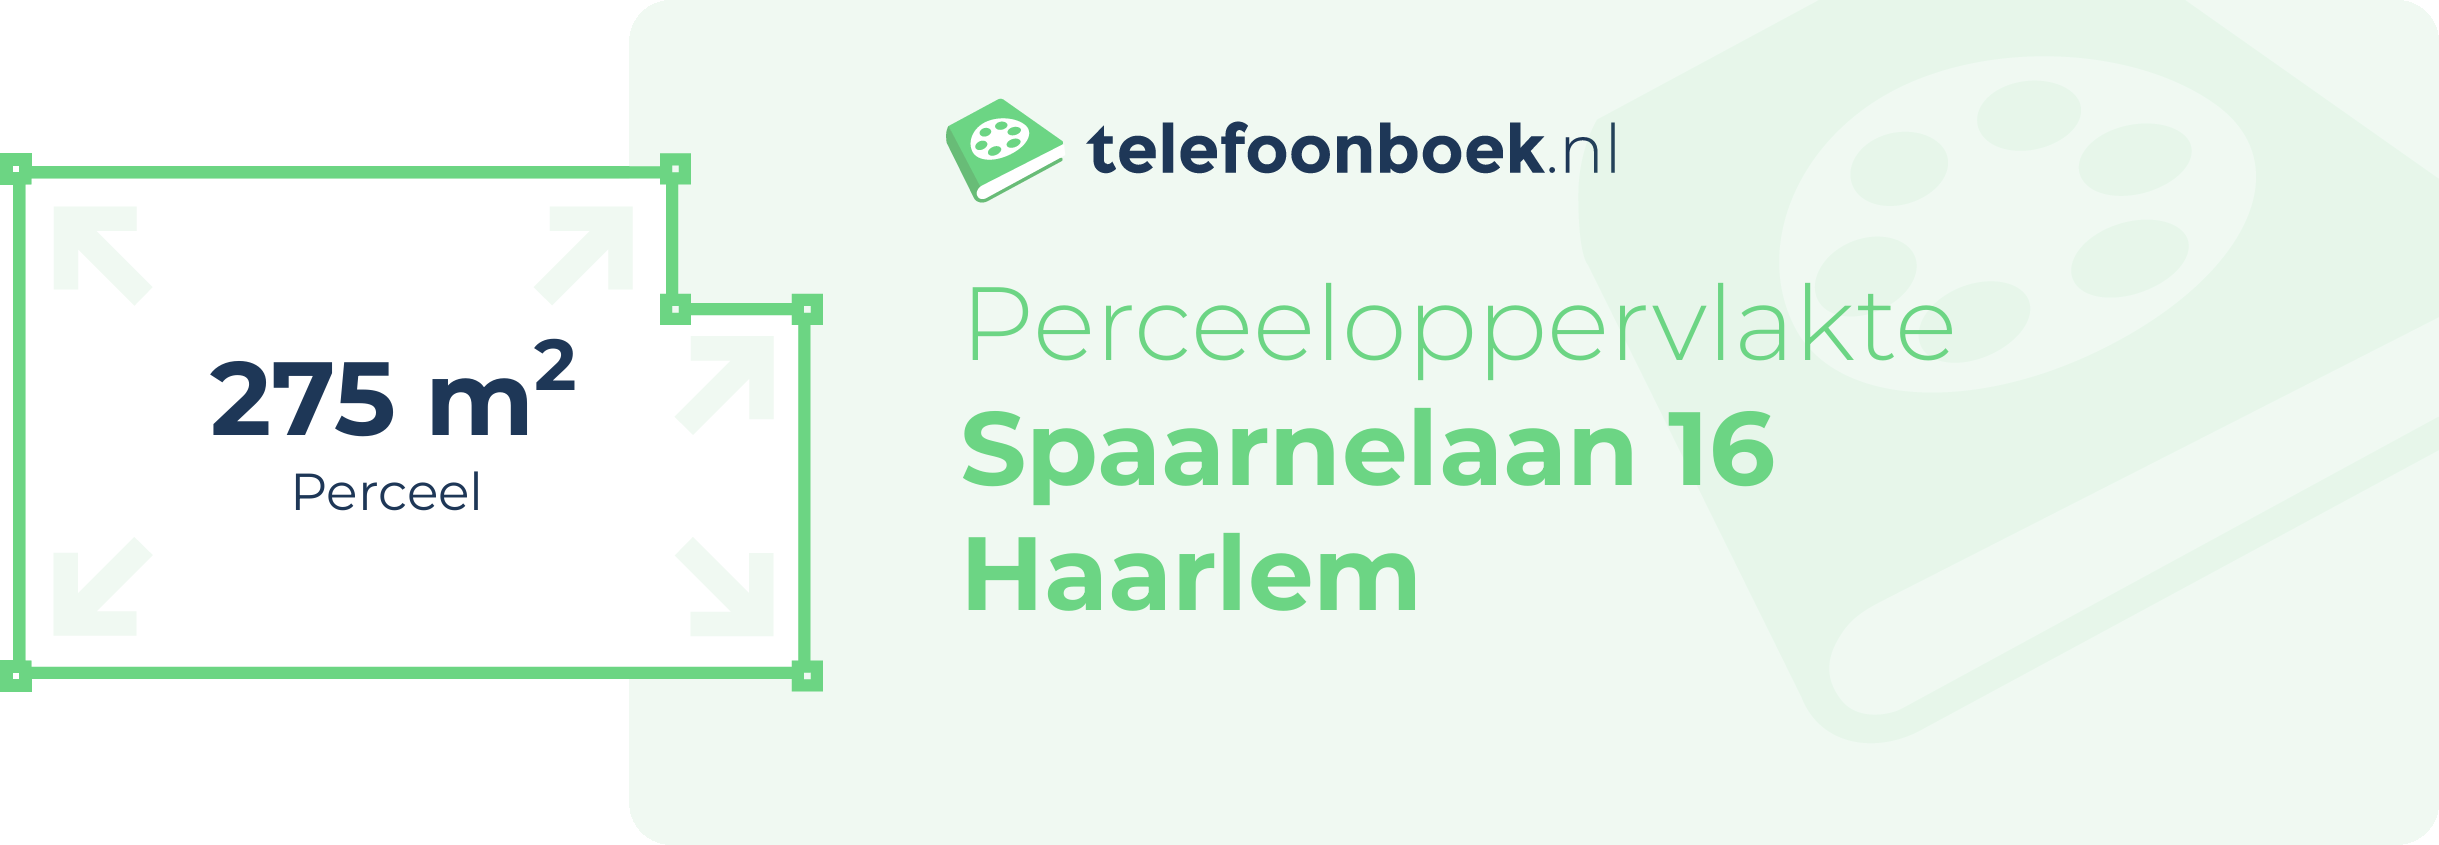 Perceeloppervlakte Spaarnelaan 16 Haarlem